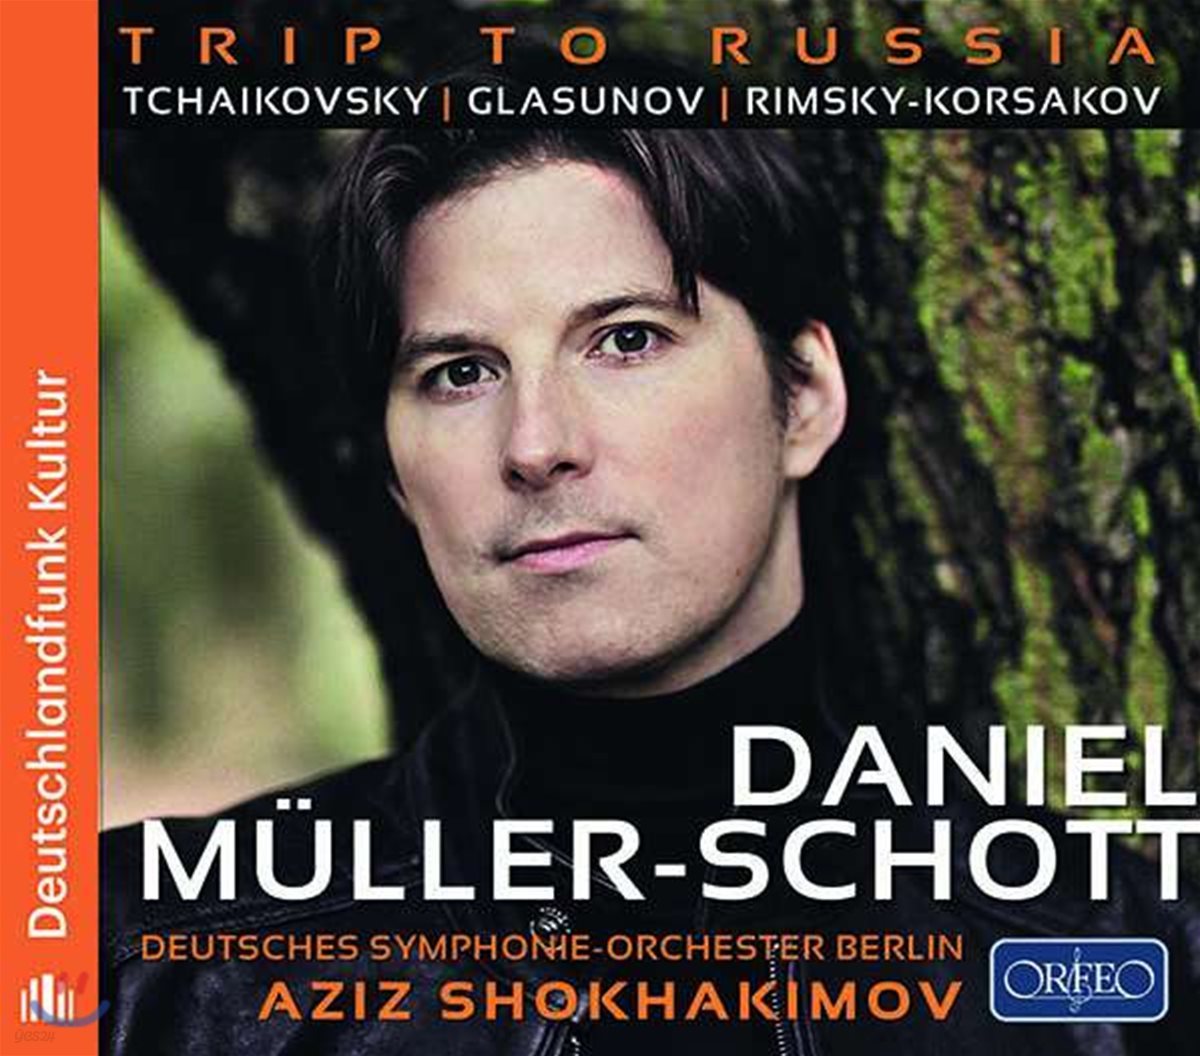 Daniel Muller-Schott 러시아 작곡가들의 첼로를 위한 곡들 (Trip to Russia)